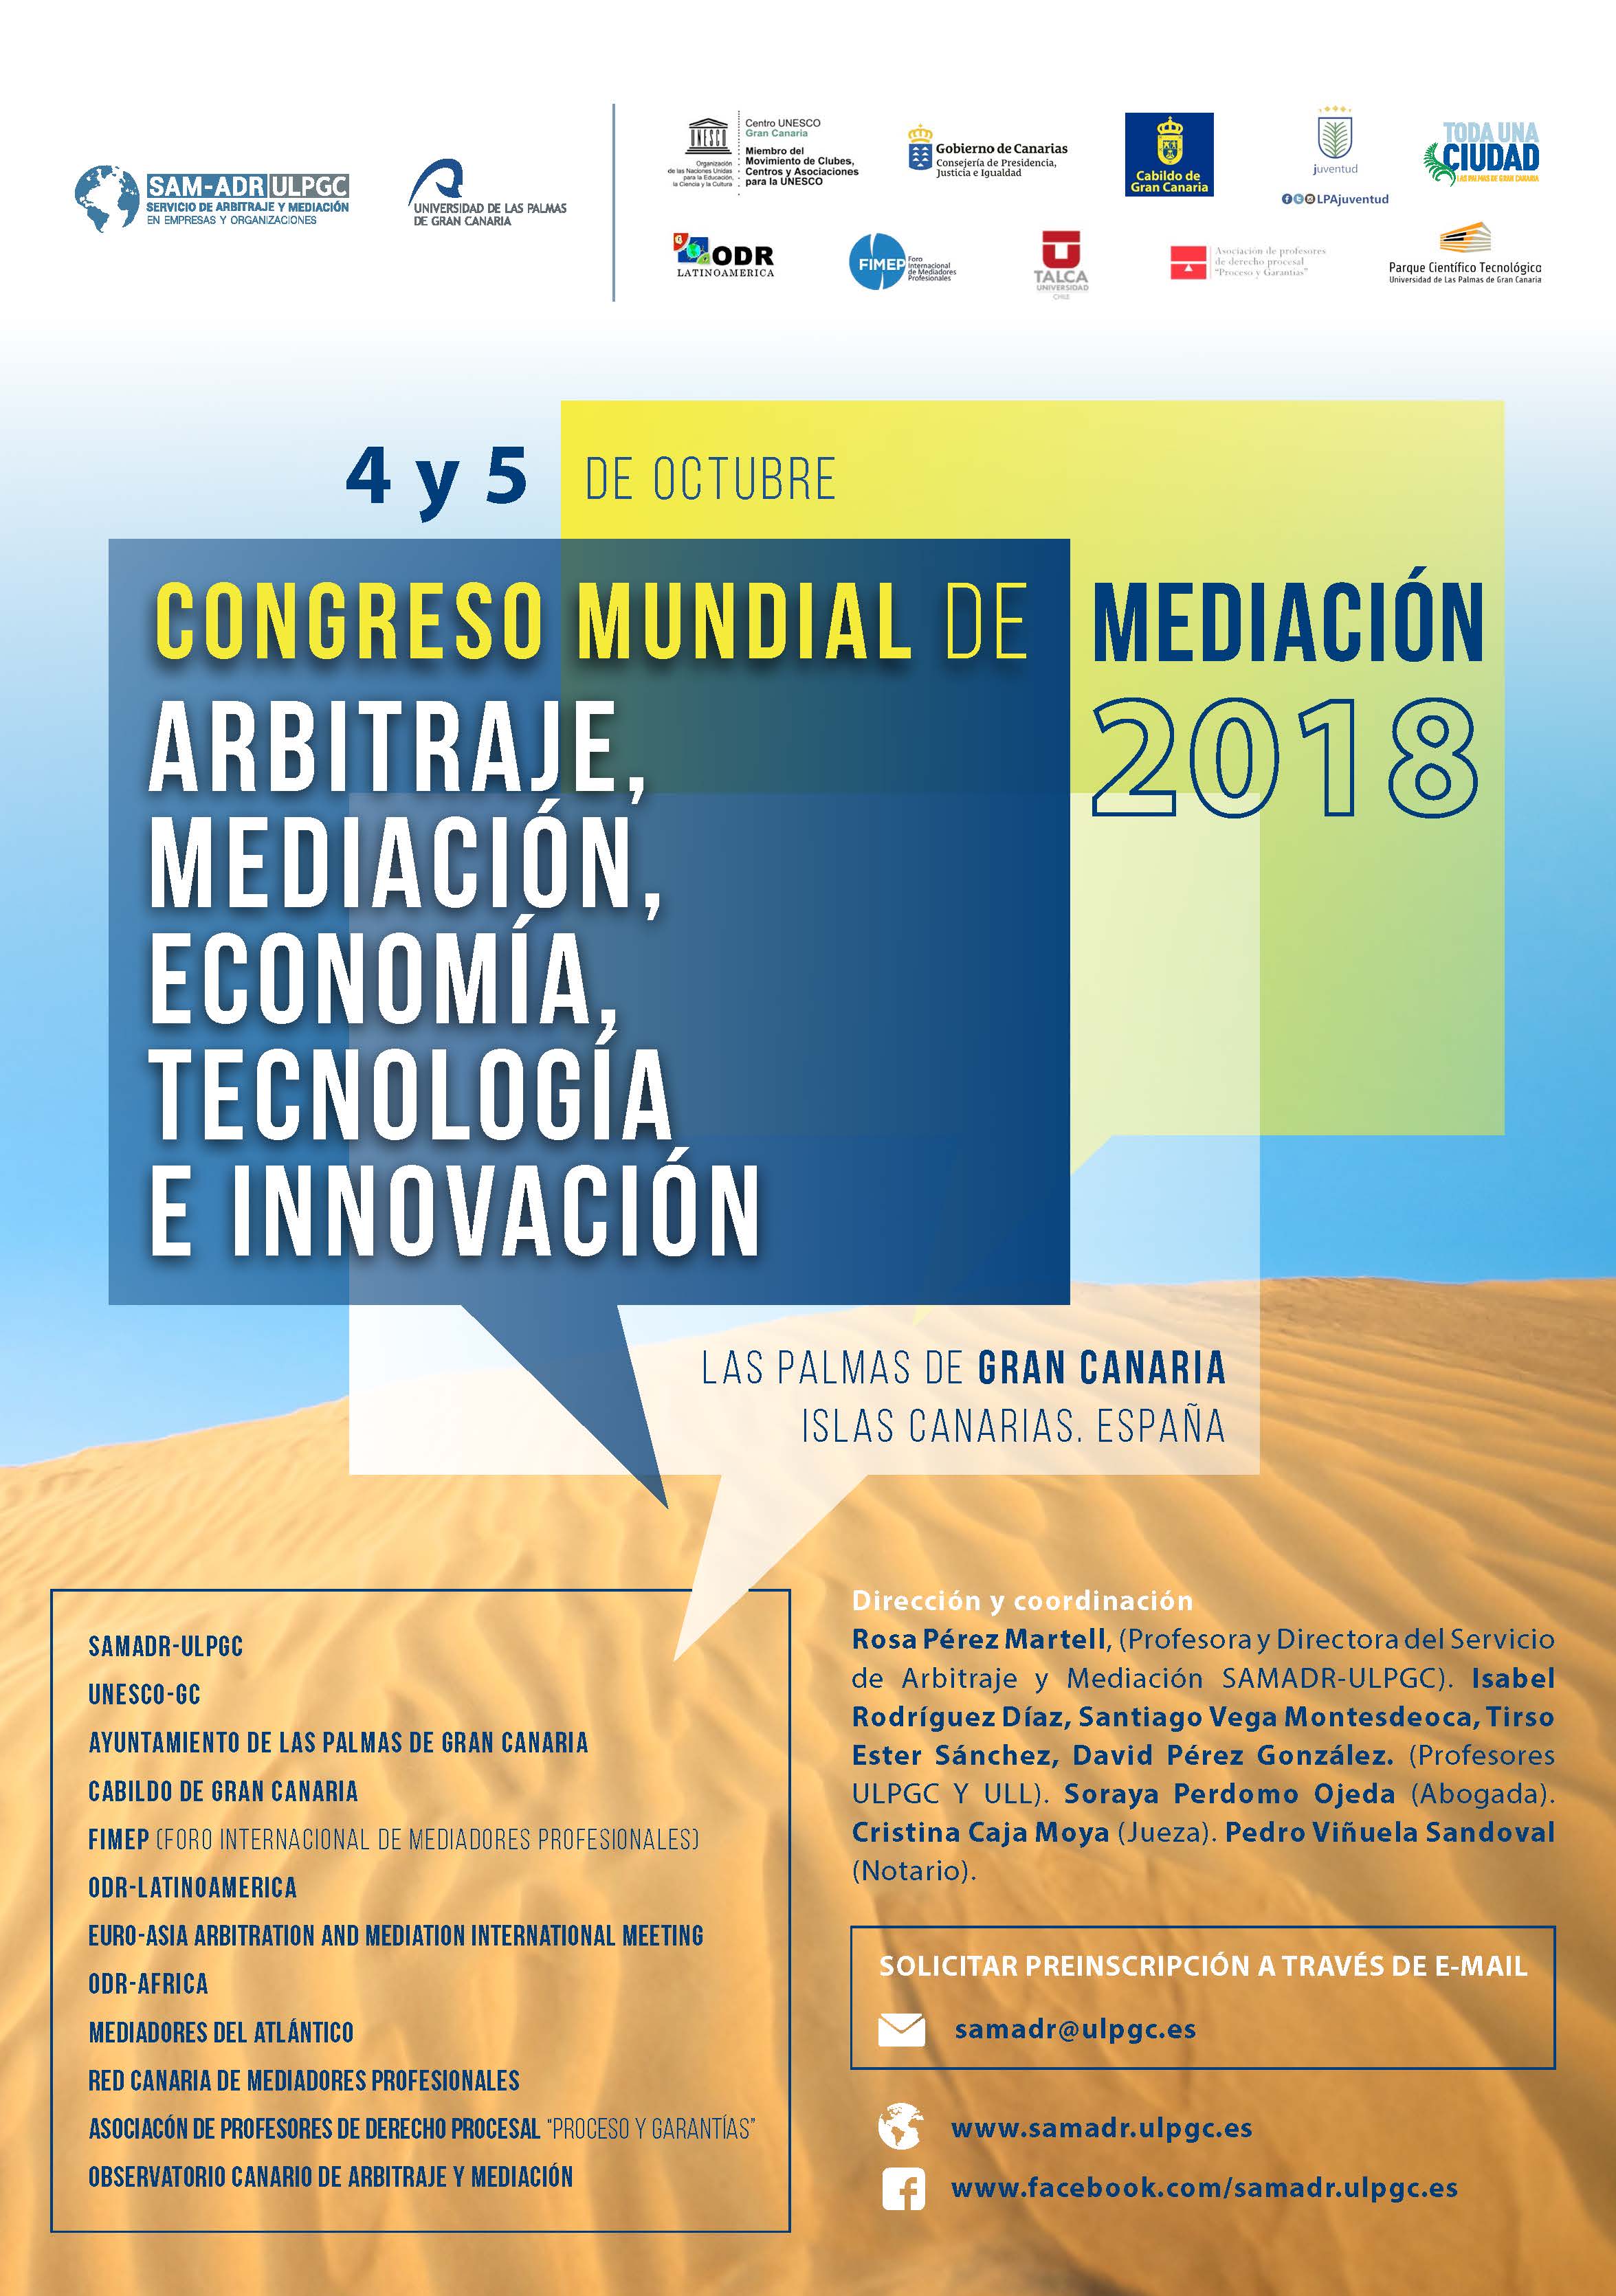 Congreso Mundial de Arbitraje, Mediación, Economía, Tecnología e Innovación